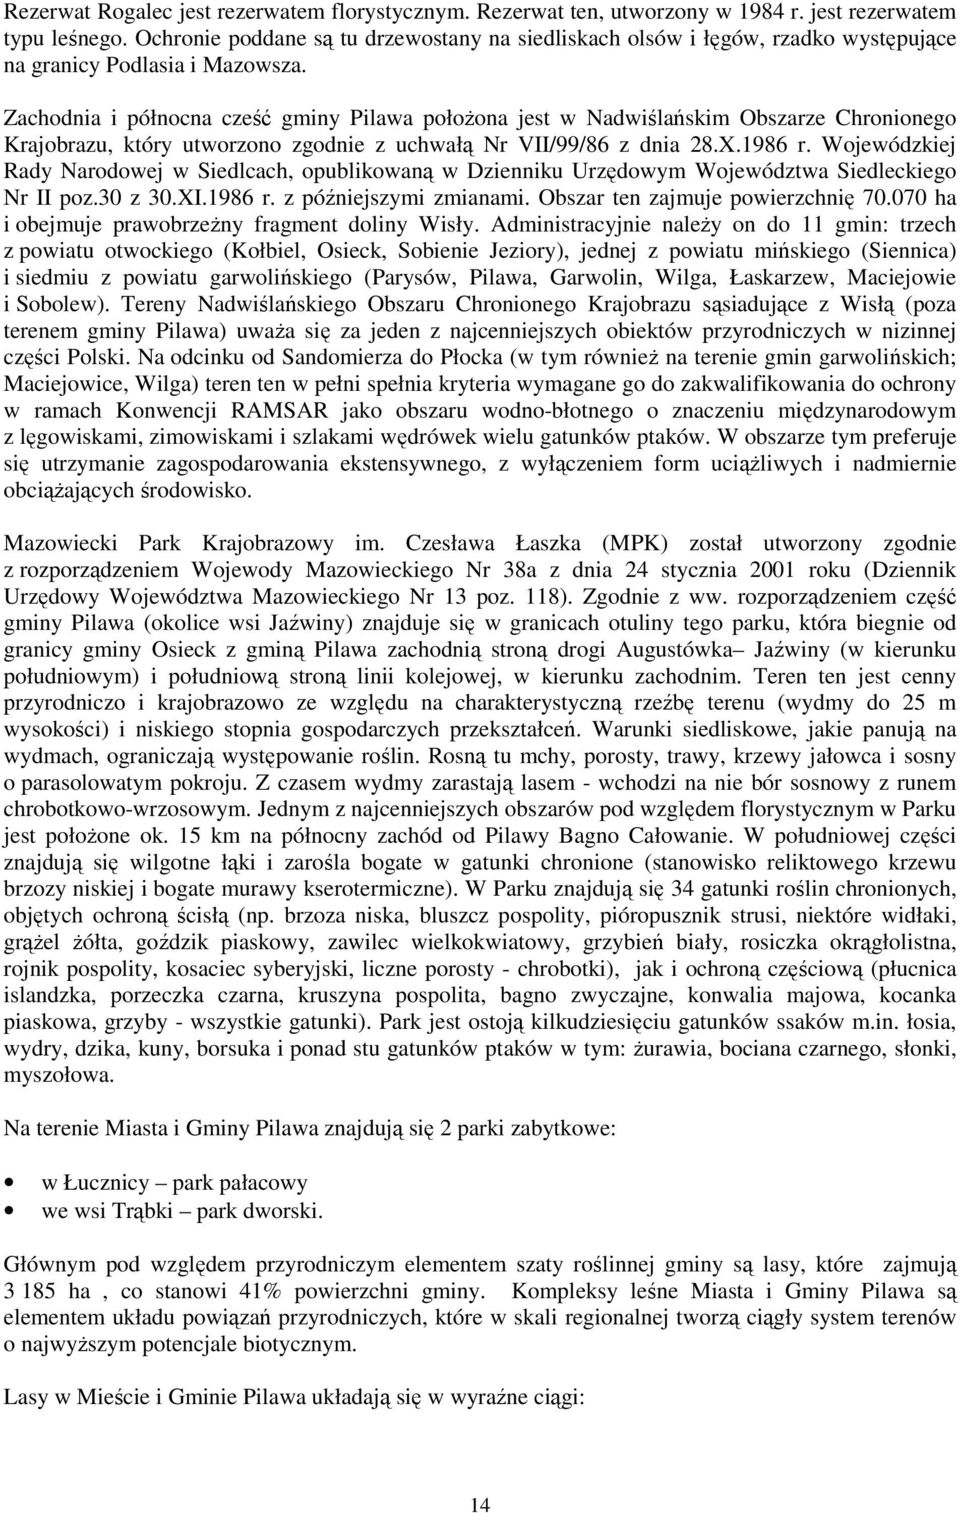 Zachodnia i północna cześć gminy Pilawa połoŝona jest w Nadwiślańskim Obszarze Chronionego Krajobrazu, który utworzono zgodnie z uchwałą Nr VII/99/86 z dnia 28.X.1986 r.